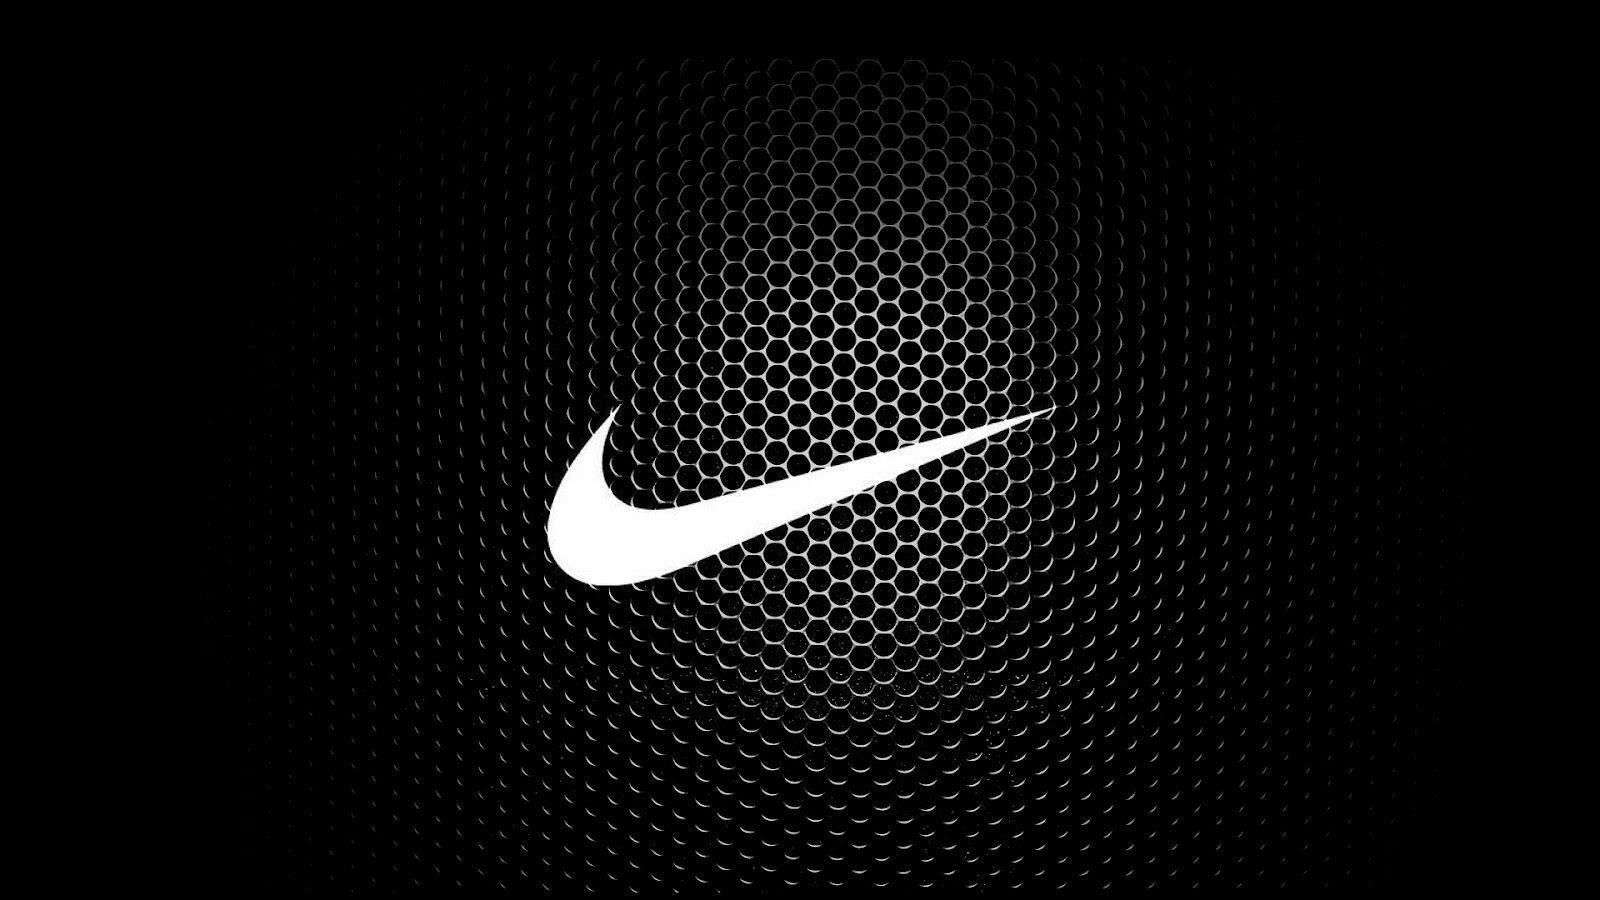 Cool Nike Logos 34 Background. Wallruru